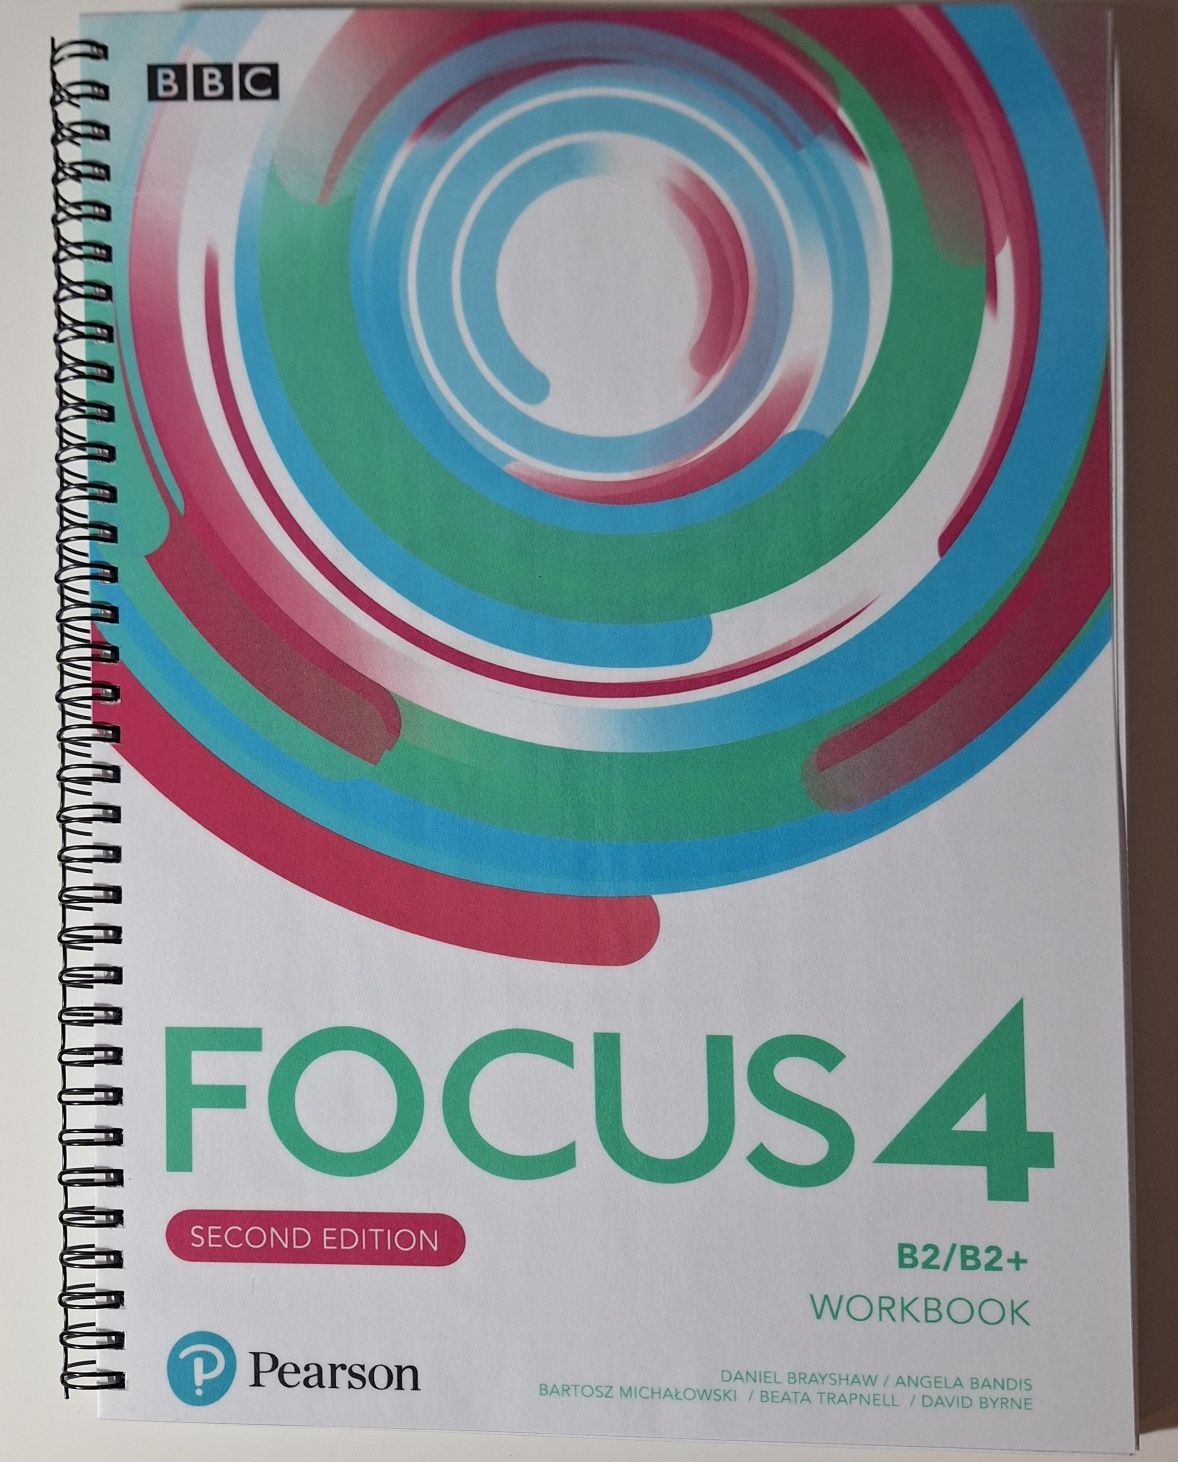 Focus 4 książka i zeszyt do ćwiczeń:::